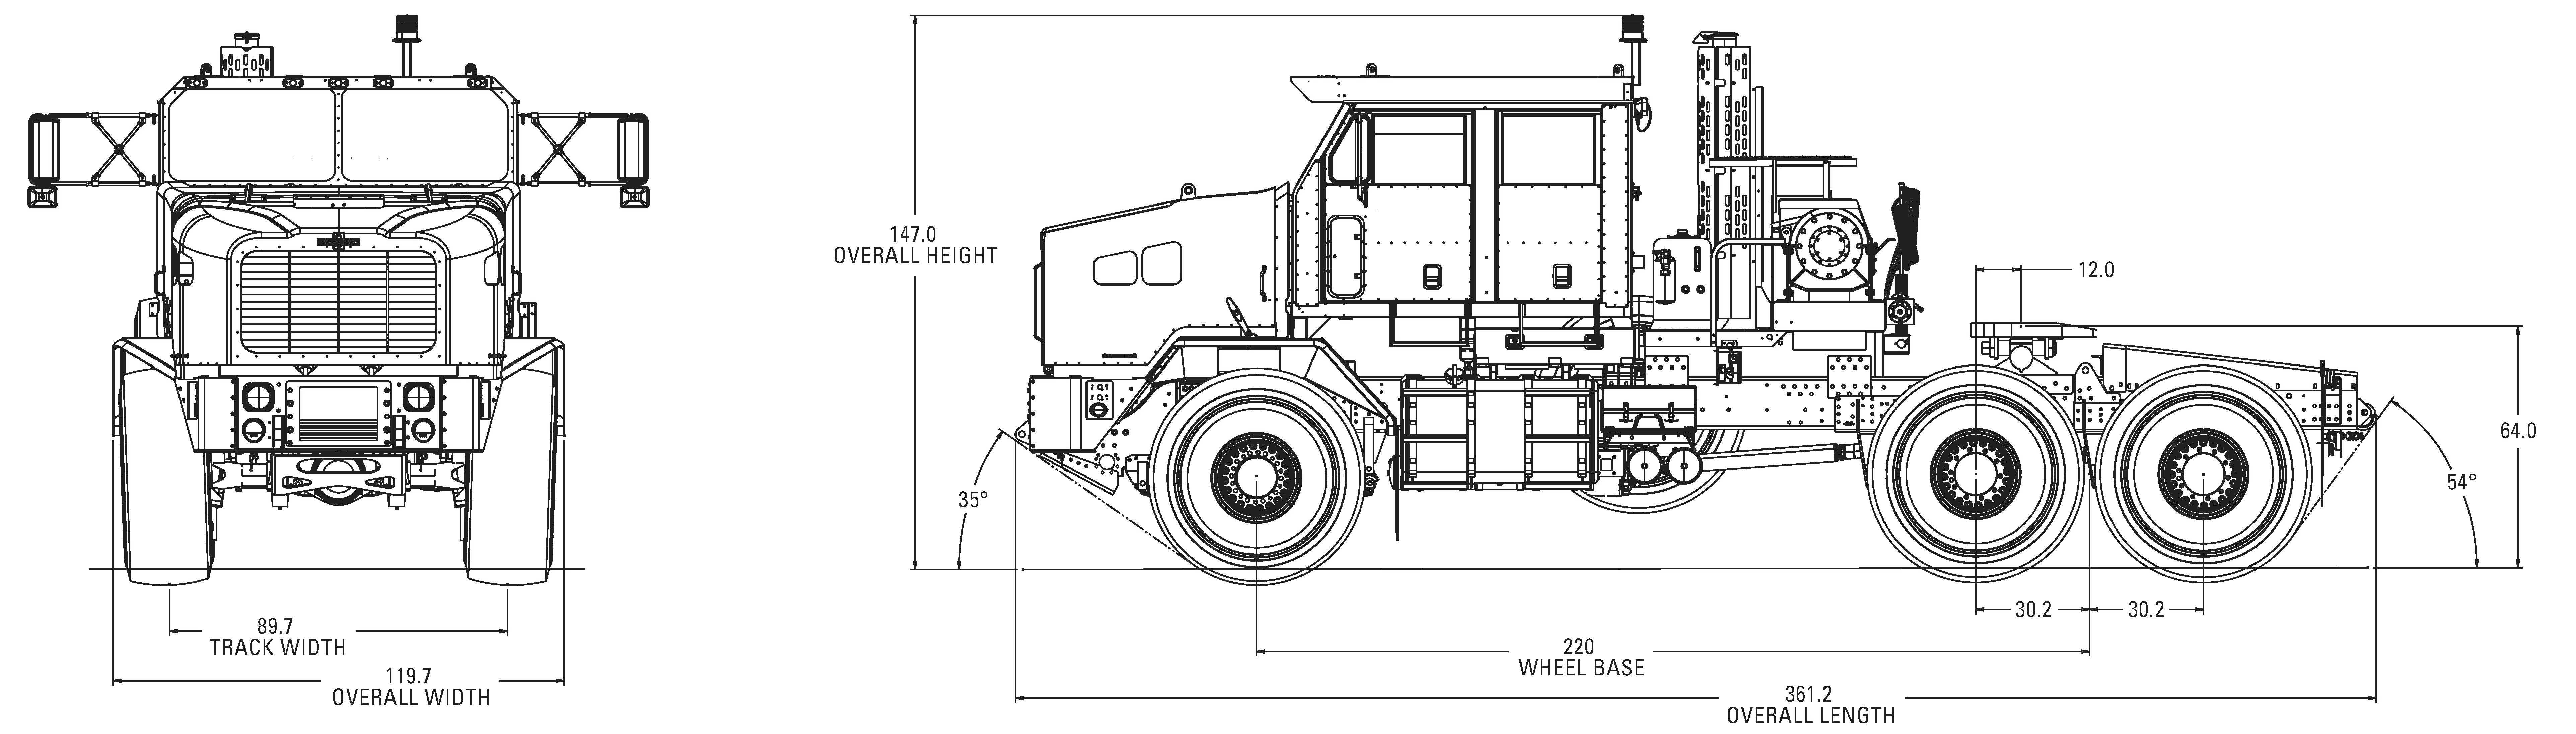 Тяжелый тактический грузовик повышенной мобильности - heavy expanded mobility tactical truck